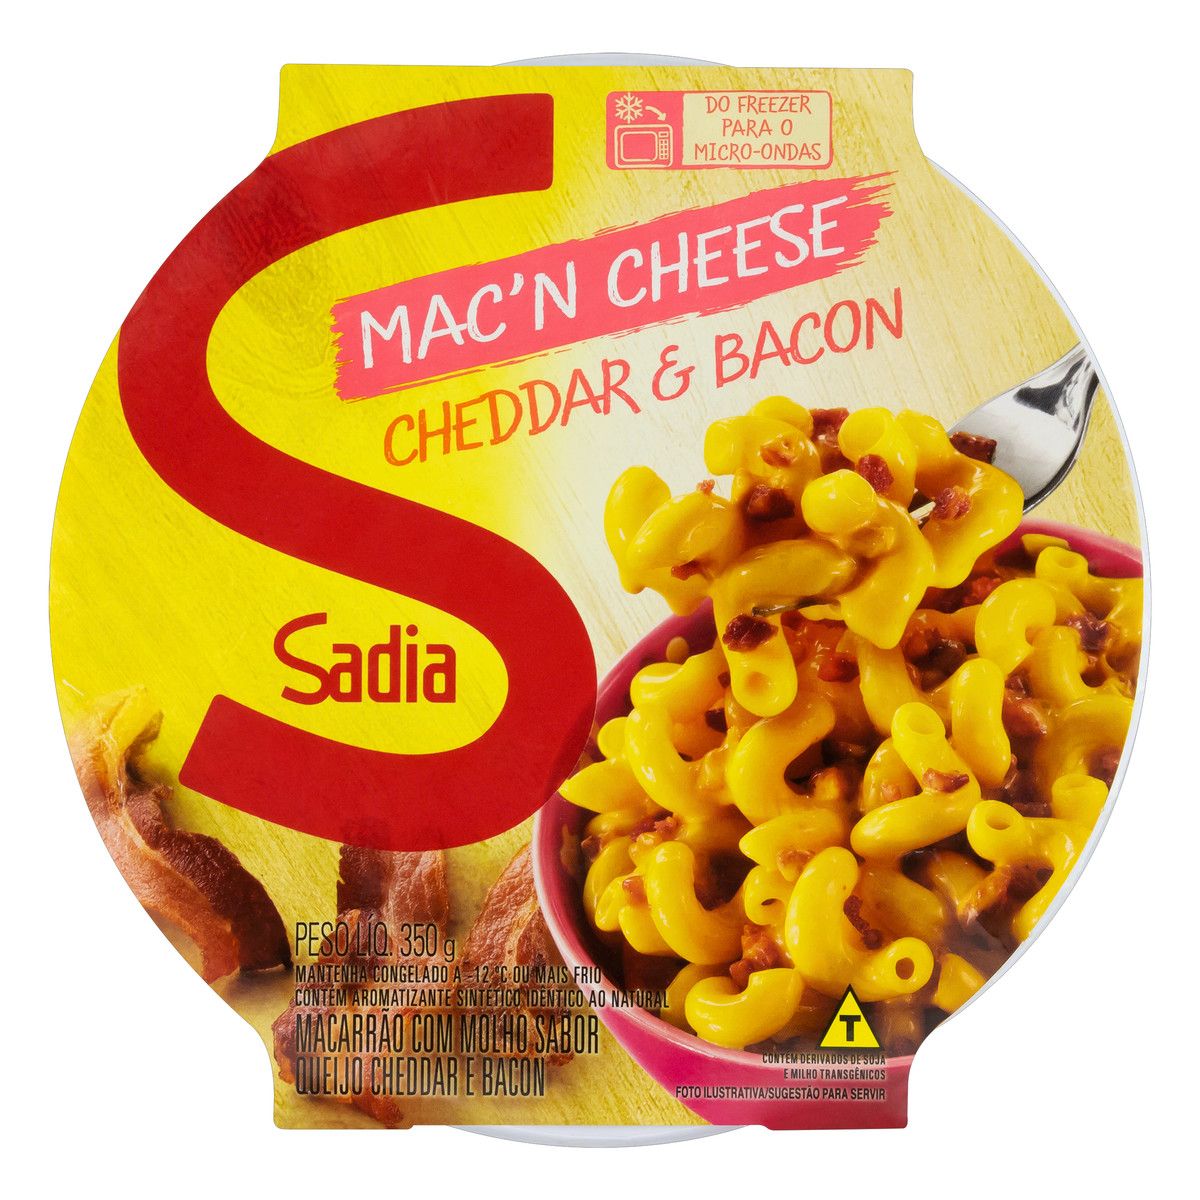 Mac'n Cheese Cheddar & Bacon Sadia Pote 350g